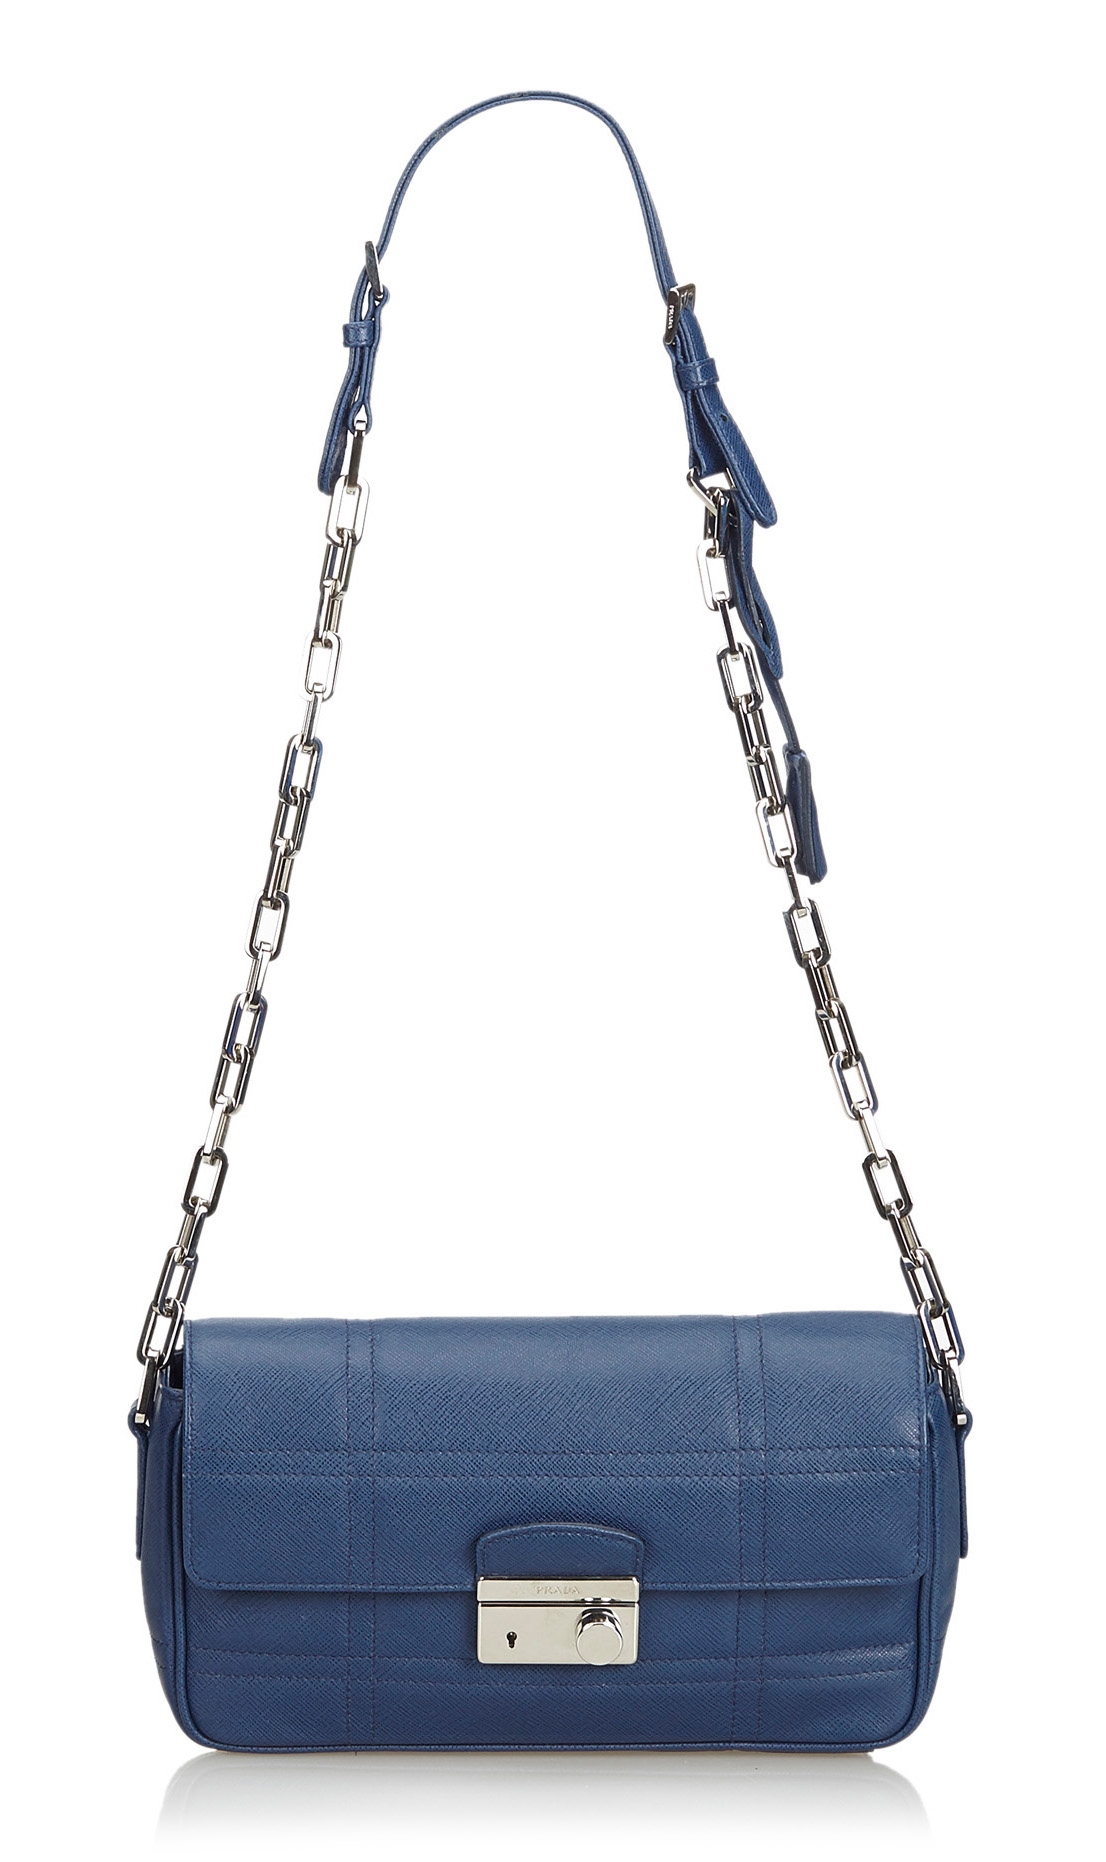 Prada Blue leather messenger bag